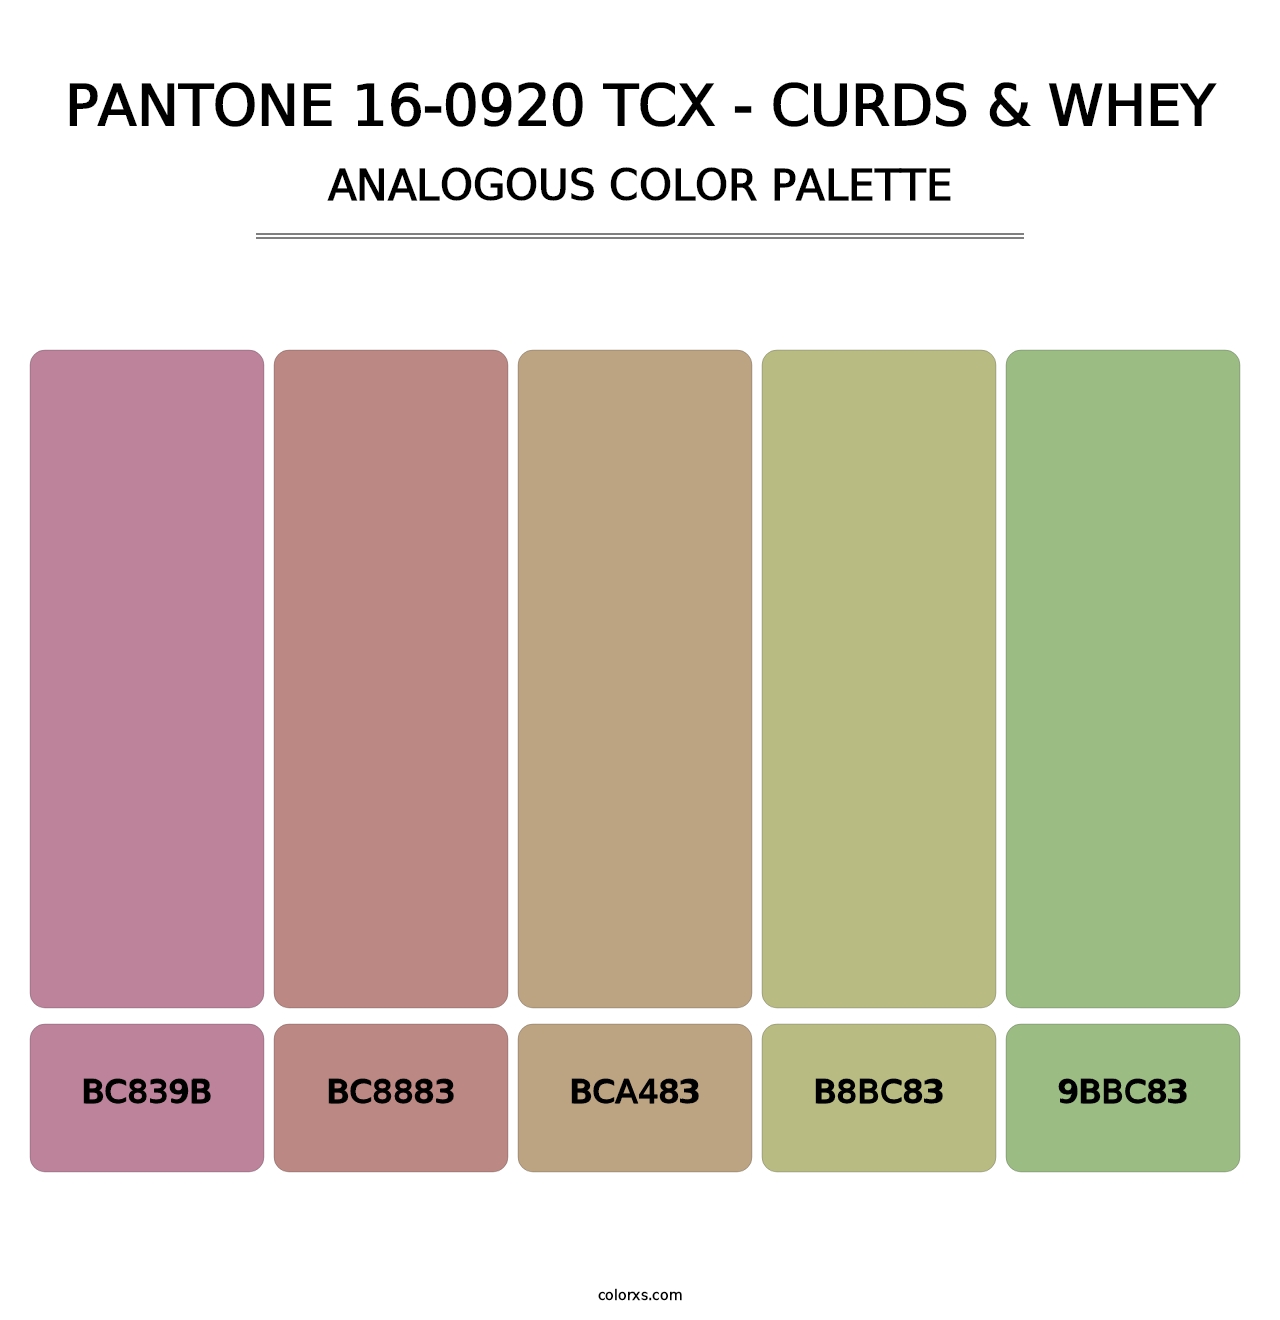 PANTONE 16-0920 TCX - Curds & Whey - Analogous Color Palette